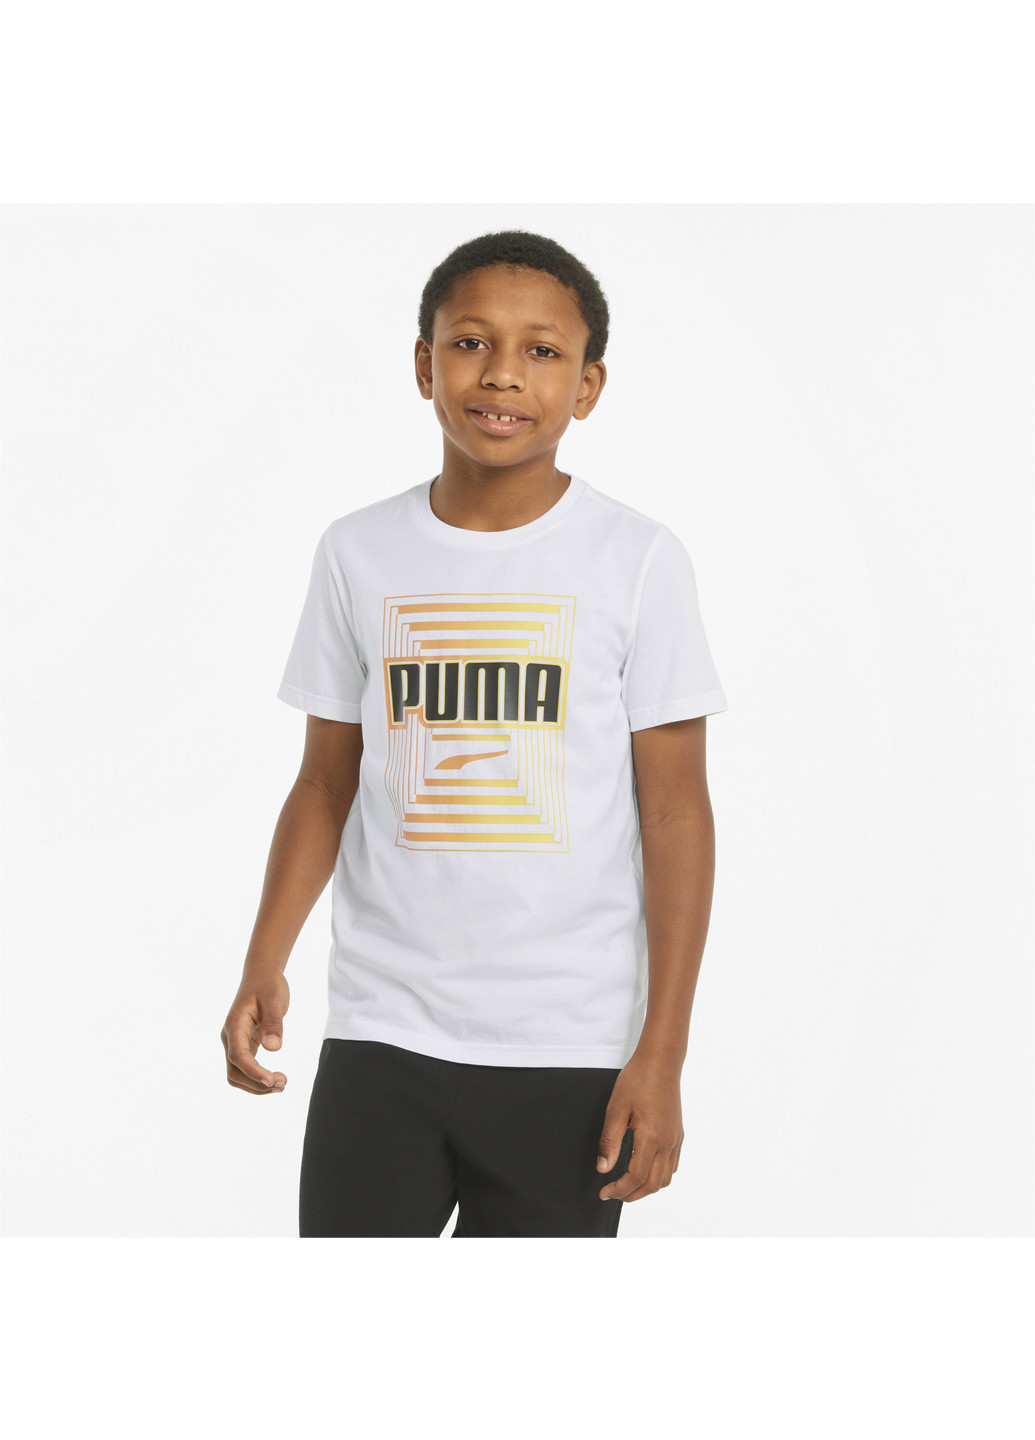 Дитяча футболка Alpha Graphic Youth Tee Puma однотонна біла спортивна бавовна, поліестер